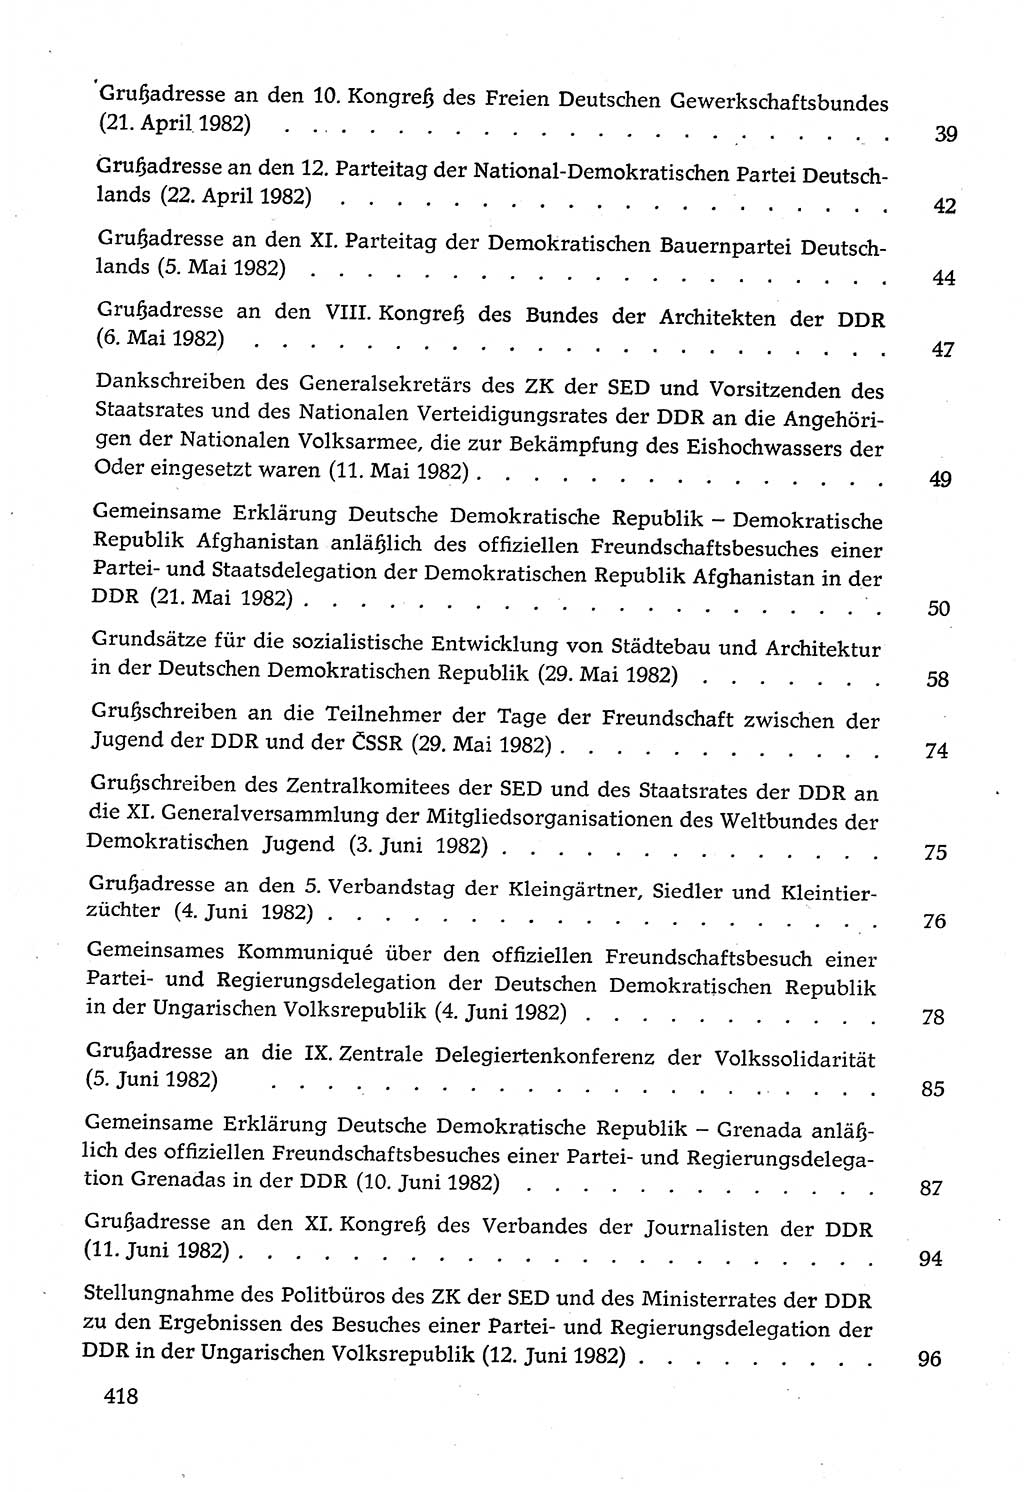 Dokumente der Sozialistischen Einheitspartei Deutschlands (SED) [Deutsche Demokratische Republik (DDR)] 1982-1983, Seite 418 (Dok. SED DDR 1982-1983, S. 418)